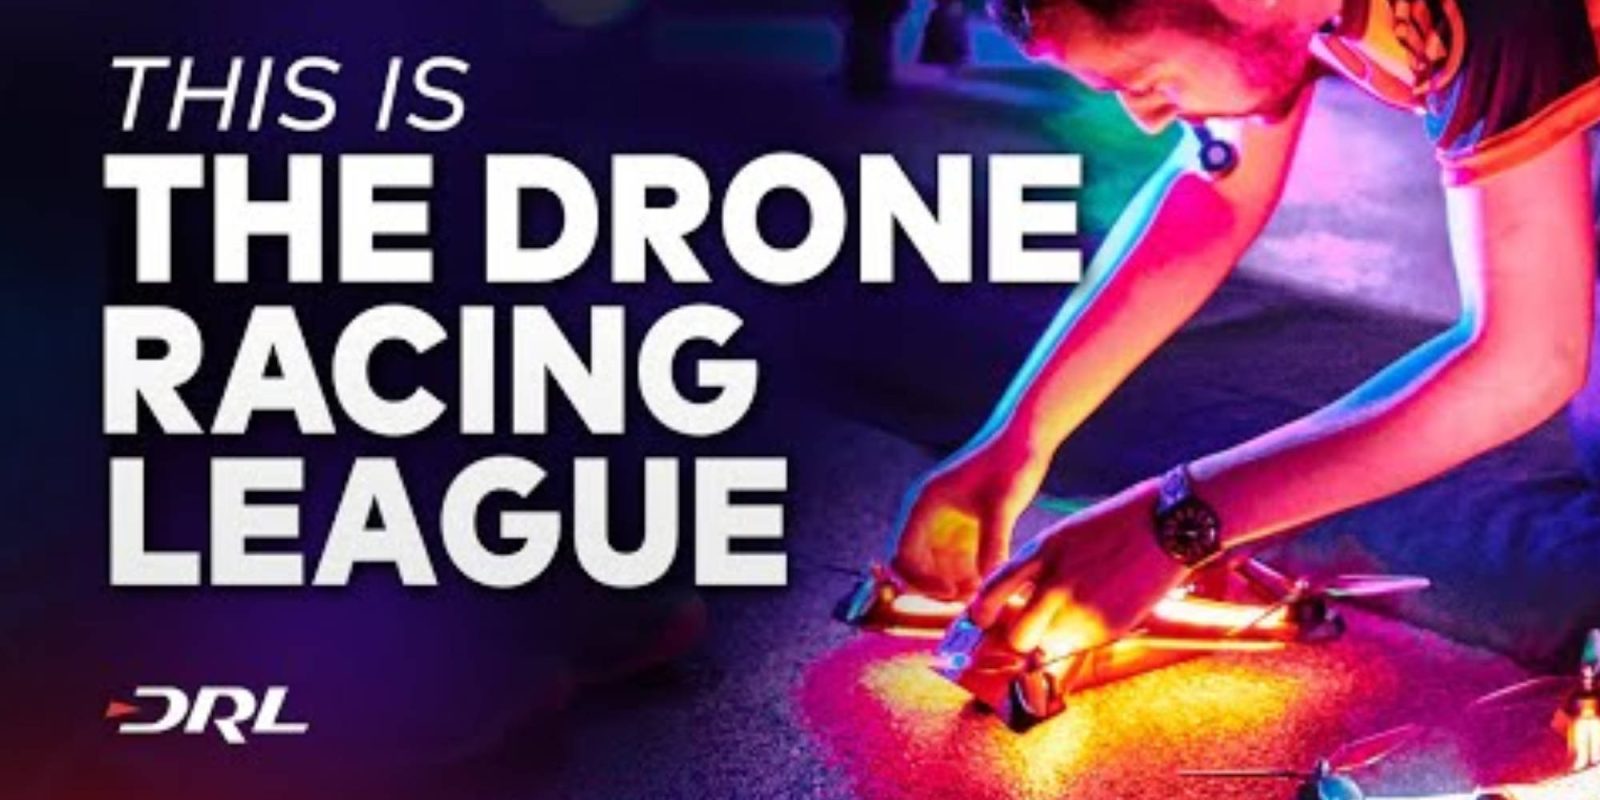 Drone Racing League executive